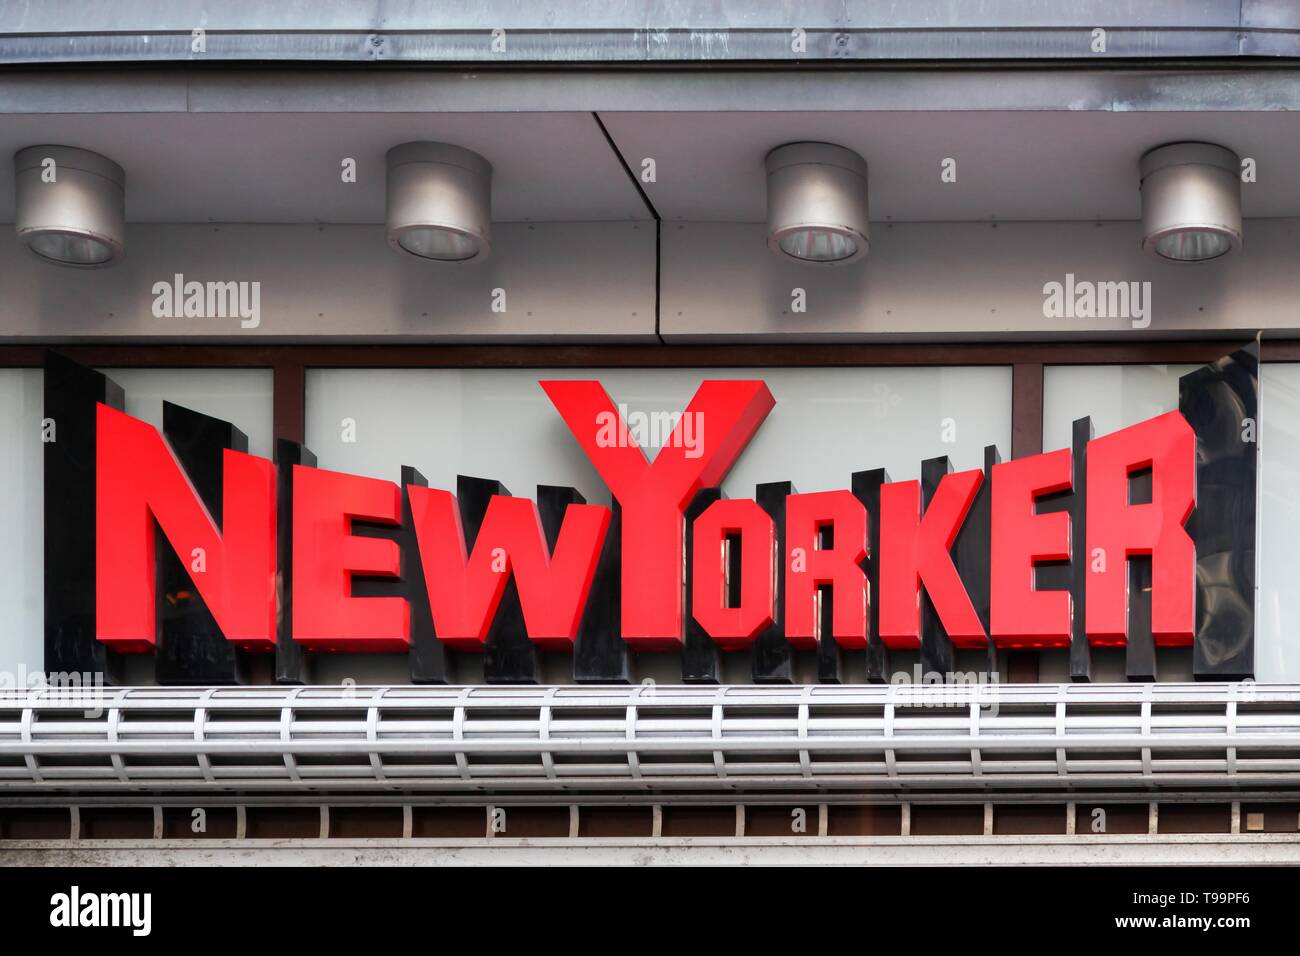 Copenhague, Danemark - 2 Avril 2019 : New Yorker logo sur un mur. New Yorker est un détaillant de vêtements allemande basée à Braunschweig Banque D'Images